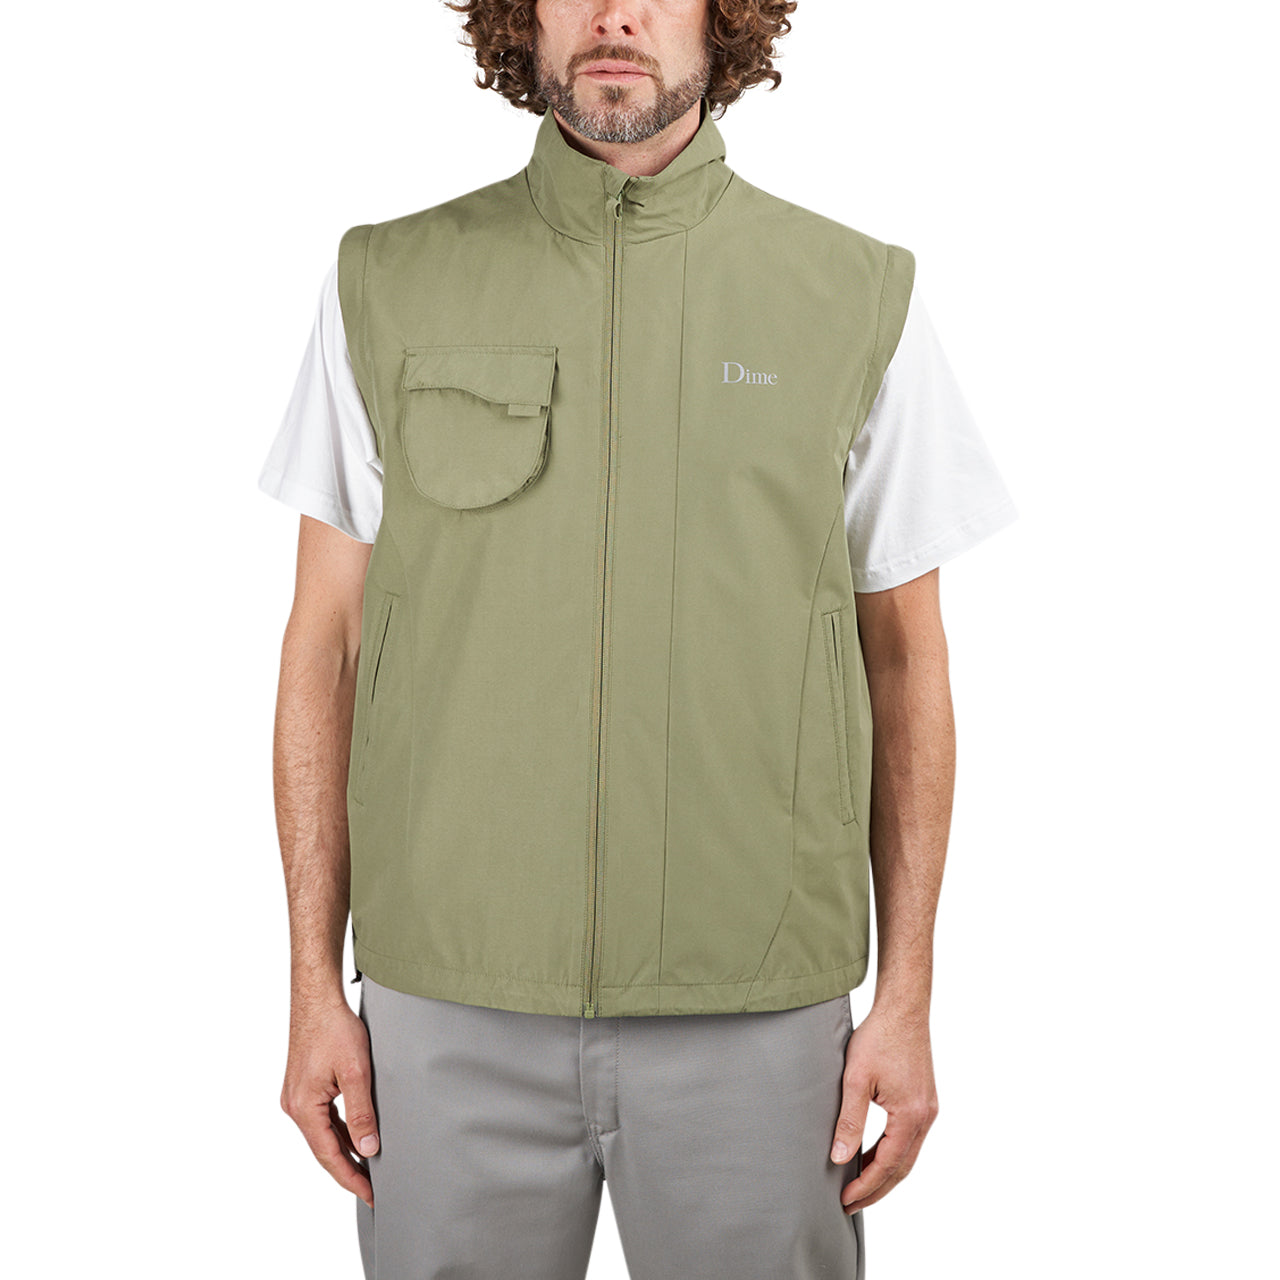 Dime Hiking Zip-Off Sleeves Jacket (Olive)